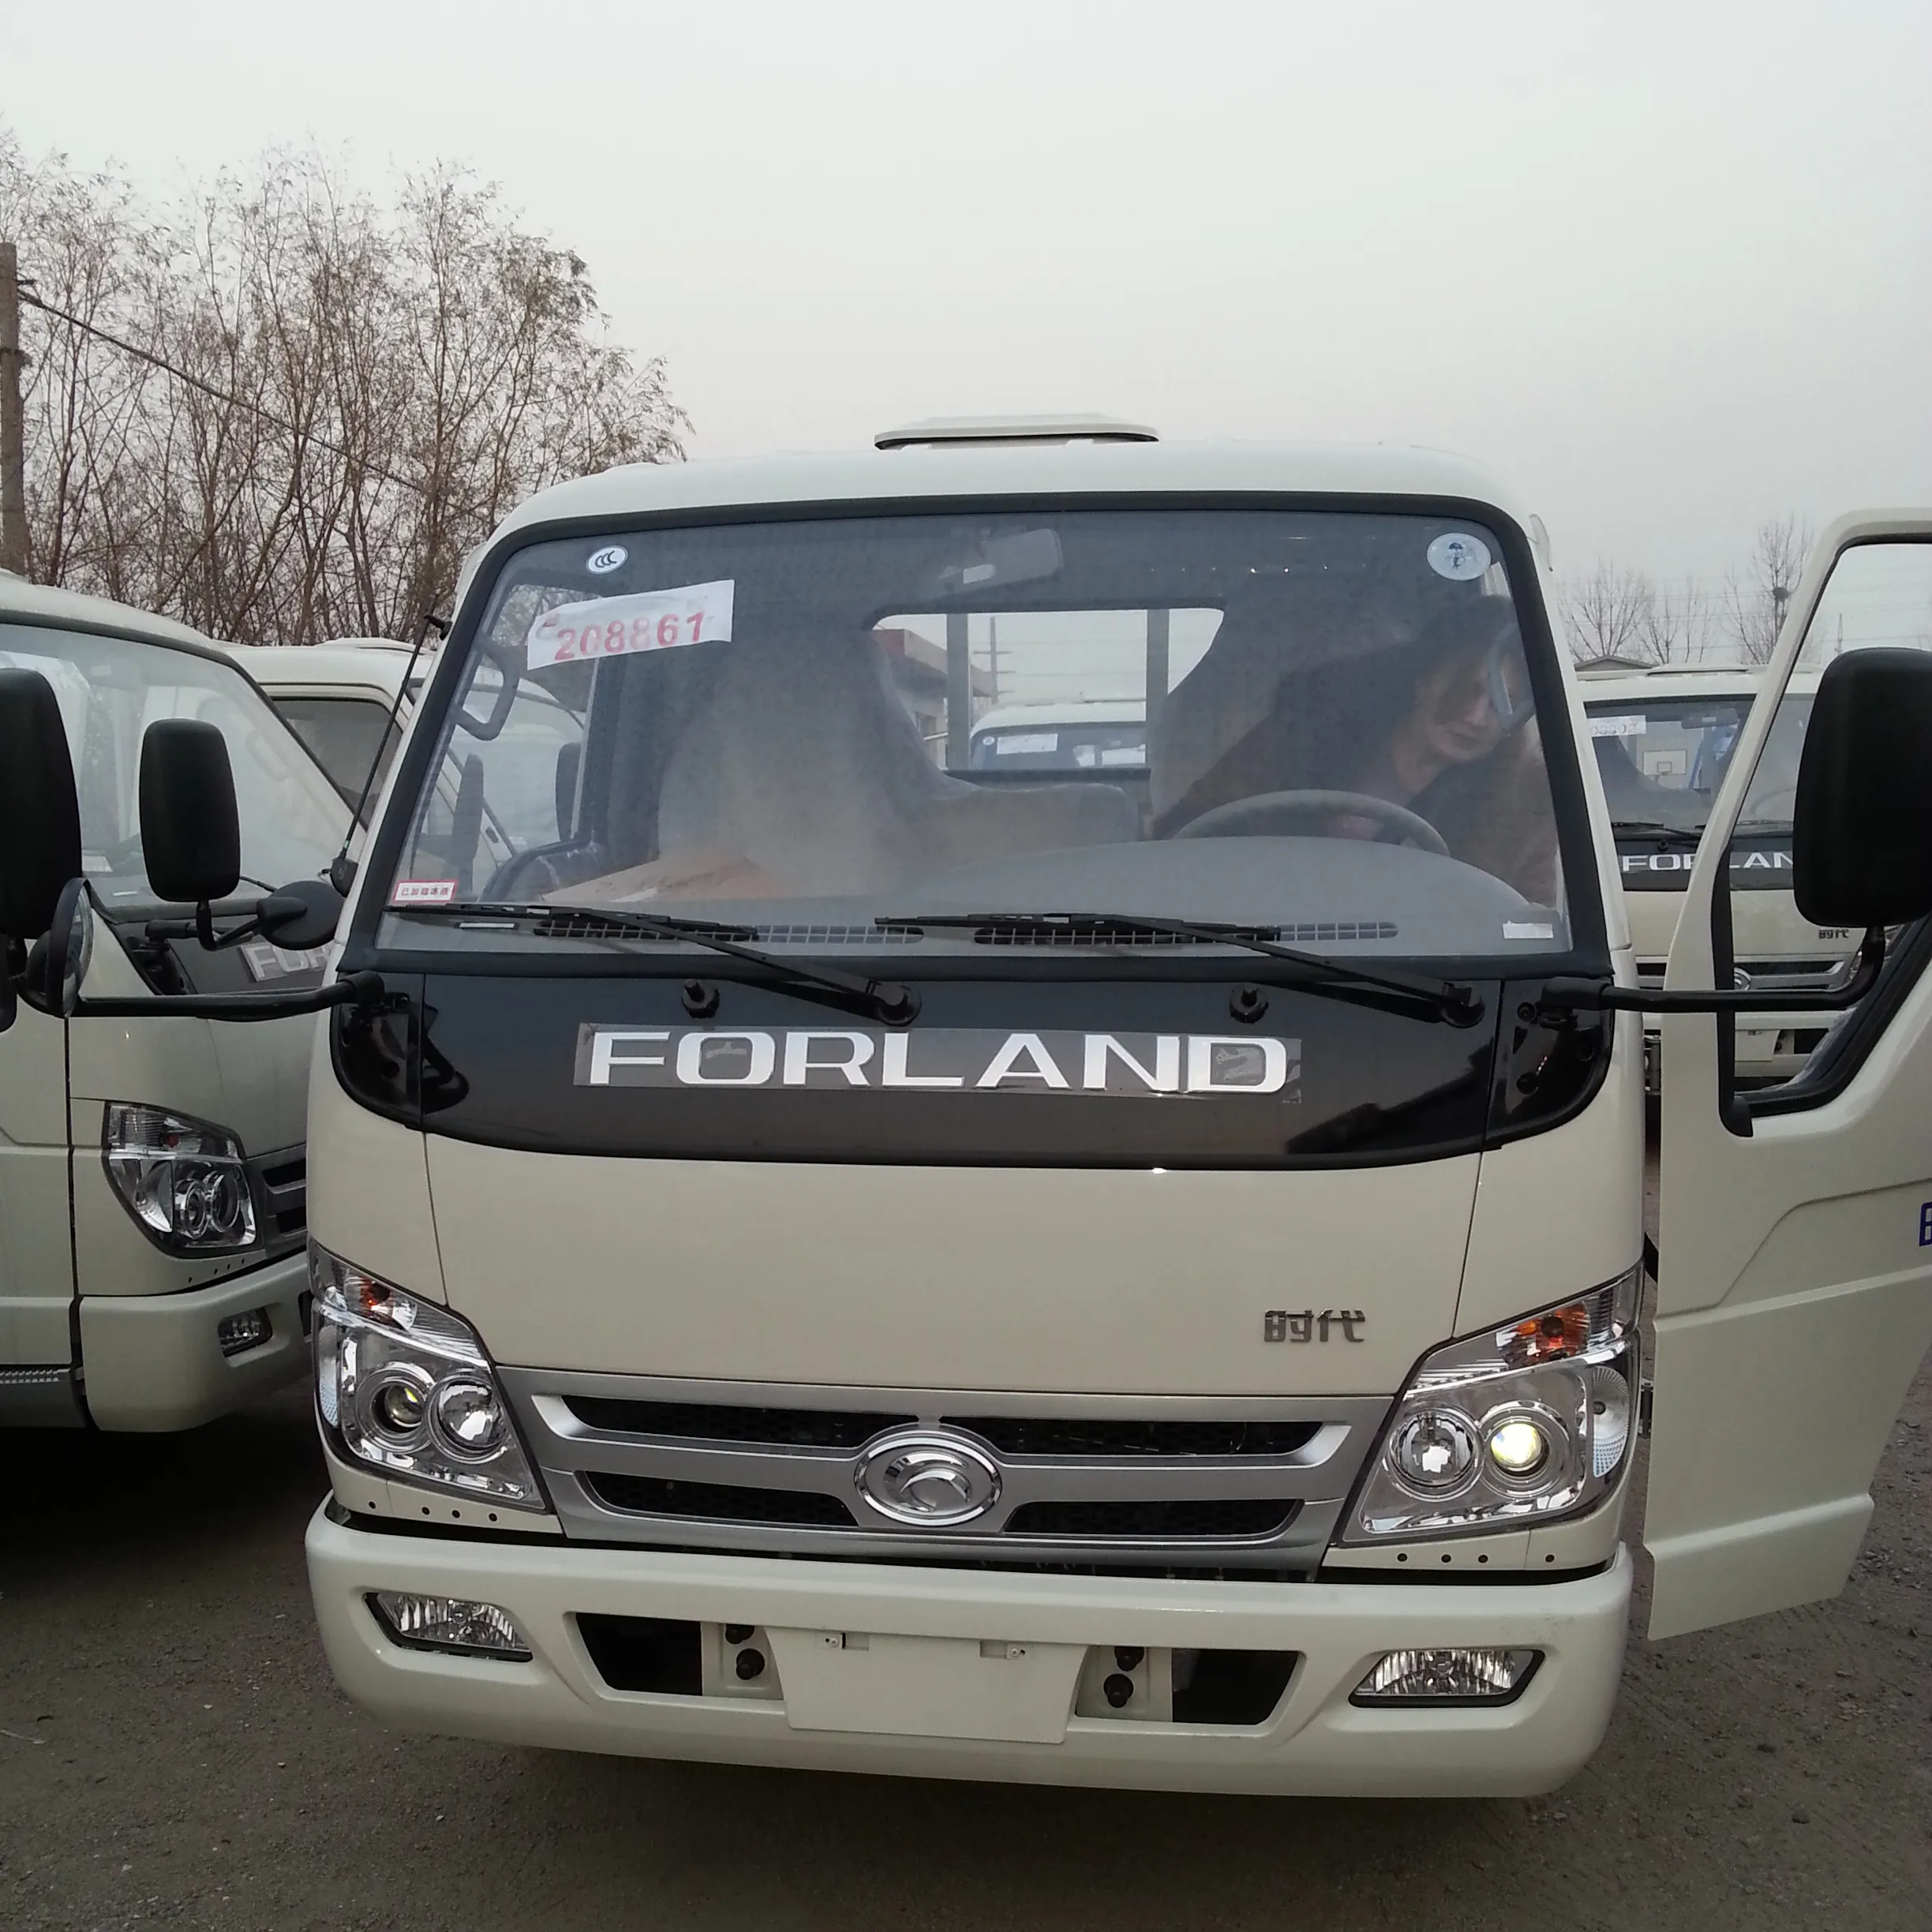 شاحنة بضائع ماركة فوتون فورلاند 2021, شاحنة بضائع ماركة فوتون 4*2 wheel van 2-4 طن ، شاحنة صغيرة وخفيفة بسعر جيد